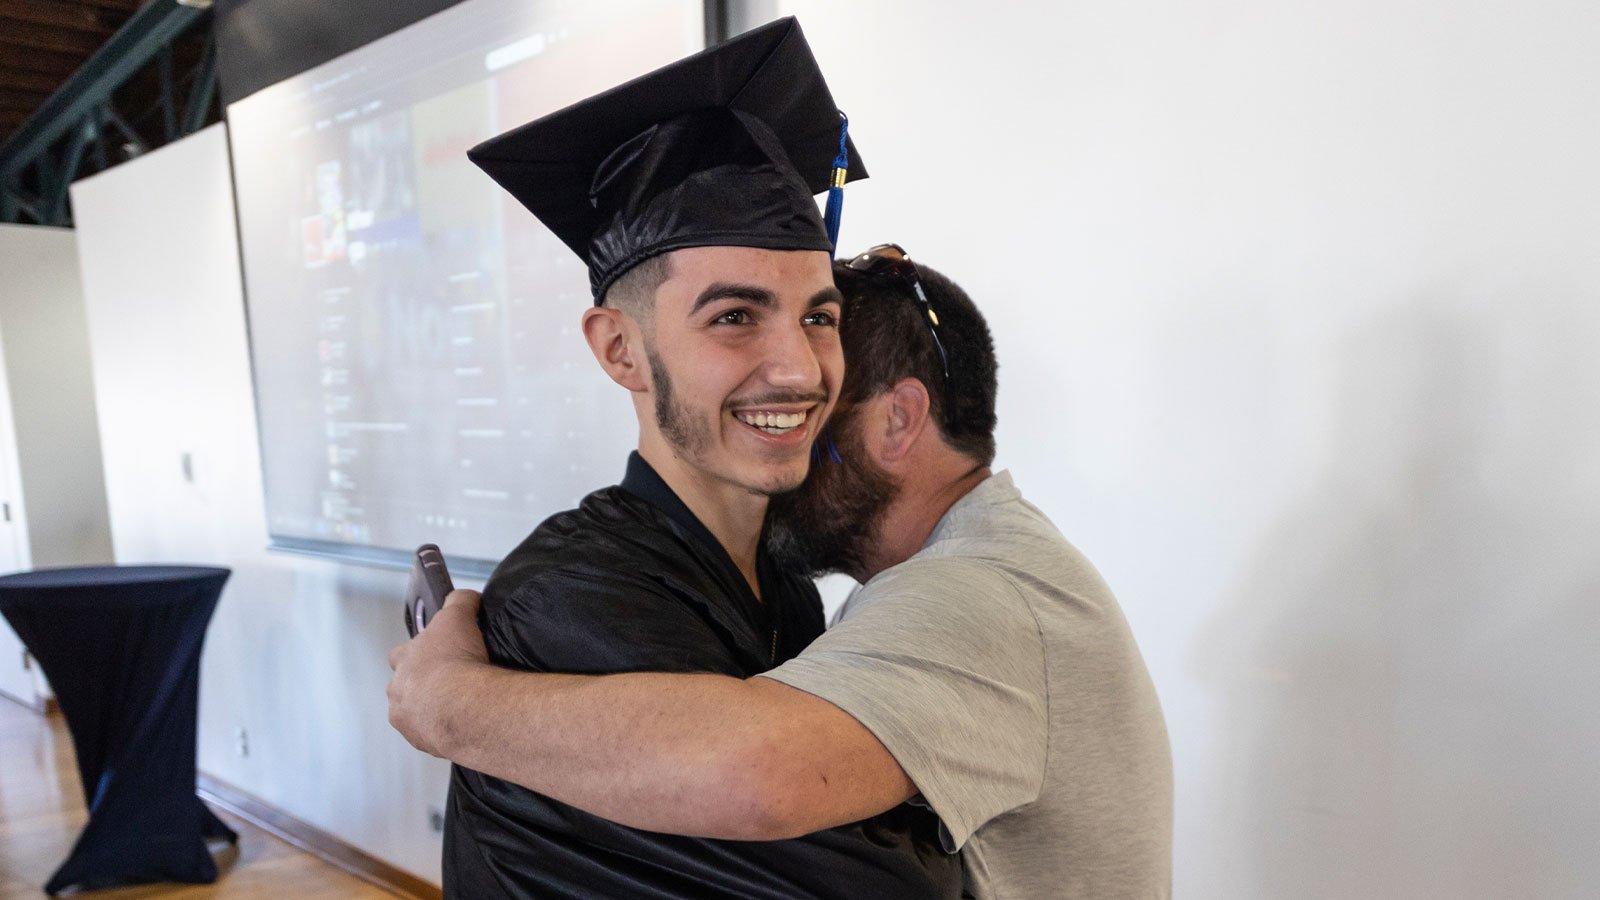 Graduate hugs man.